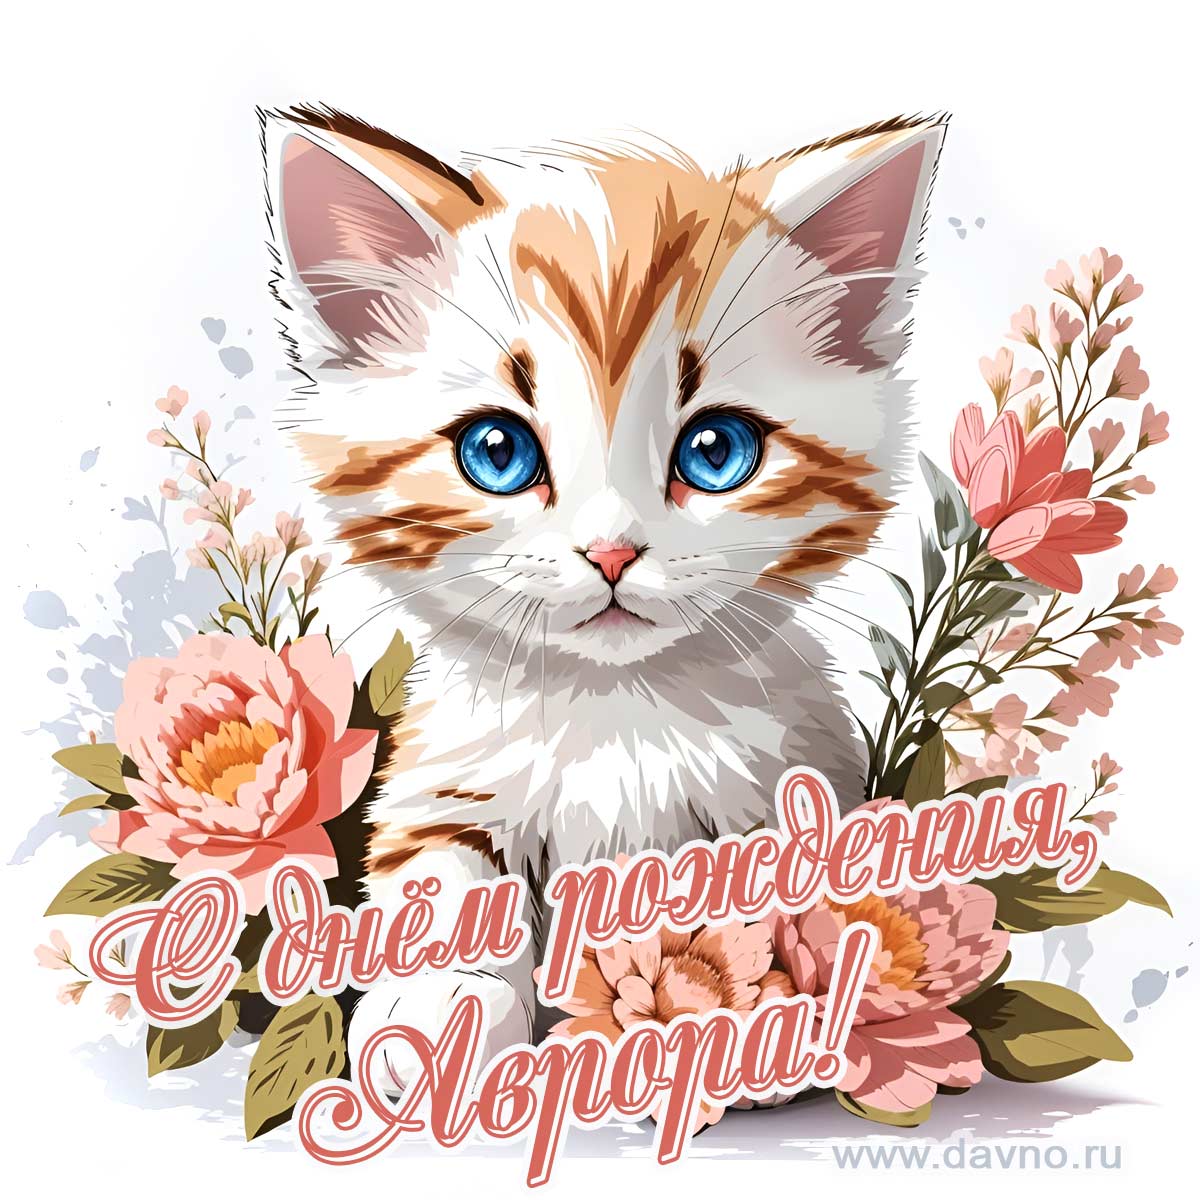 Новая рисованная поздравительная открытка для Авроры с котёнком